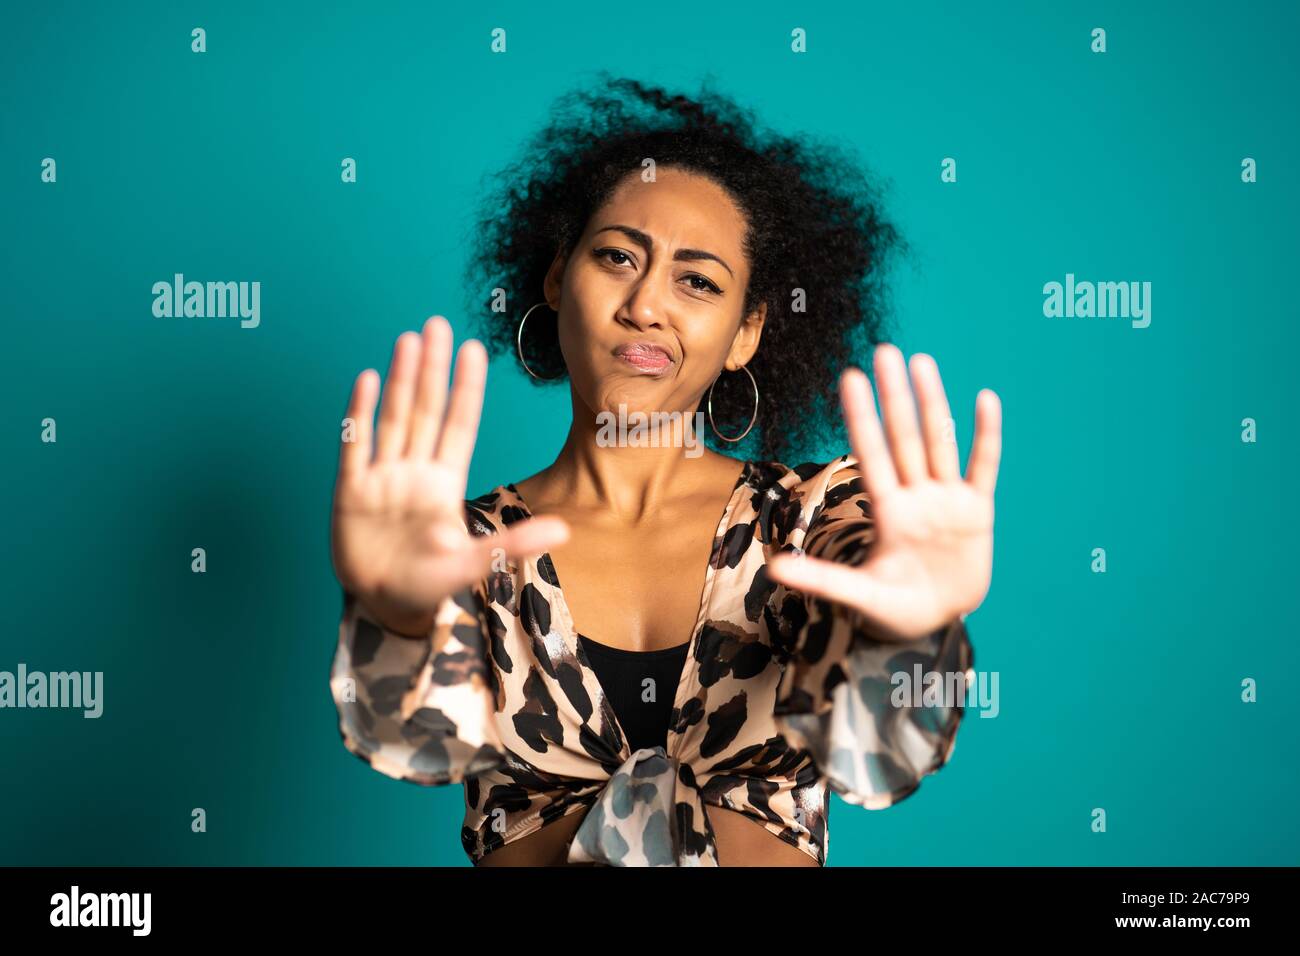 Frau missbilligenden mit Kein Stop Handzeichen Geste. Aufmerksamkeit, Ablehnen, Zurückweisen, Stimme, Porträt der schönen afrikanischen Mädchen. Stockfoto